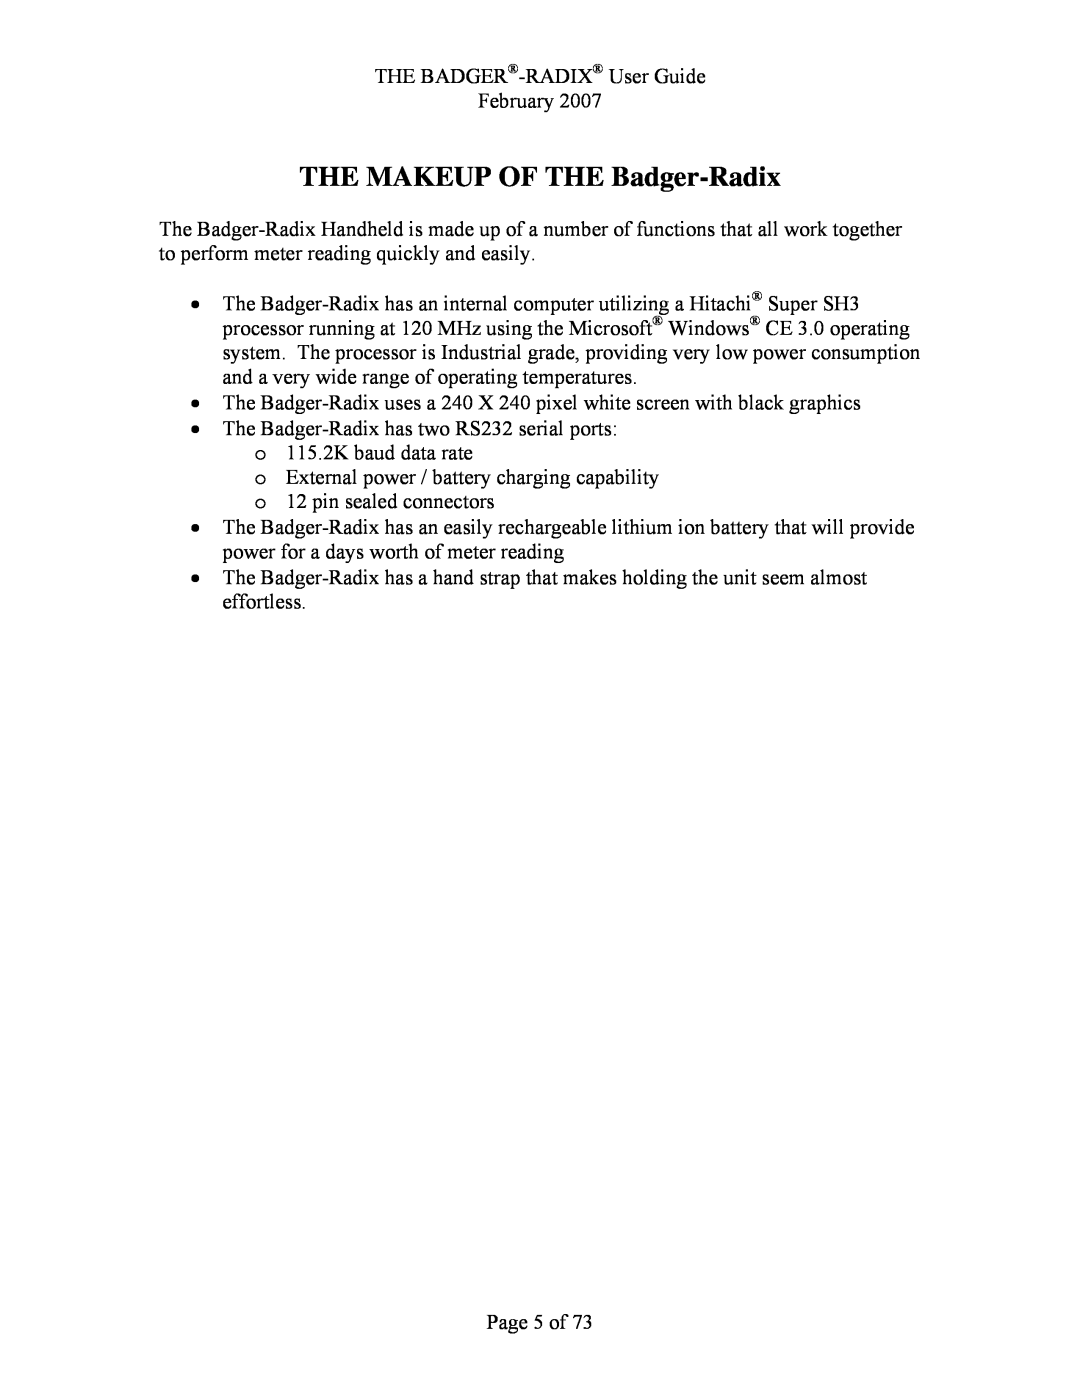 Badger Basket N64944-001, RAD-IOM-01 operation manual THE MAKEUP OF THE Badger-Radix 